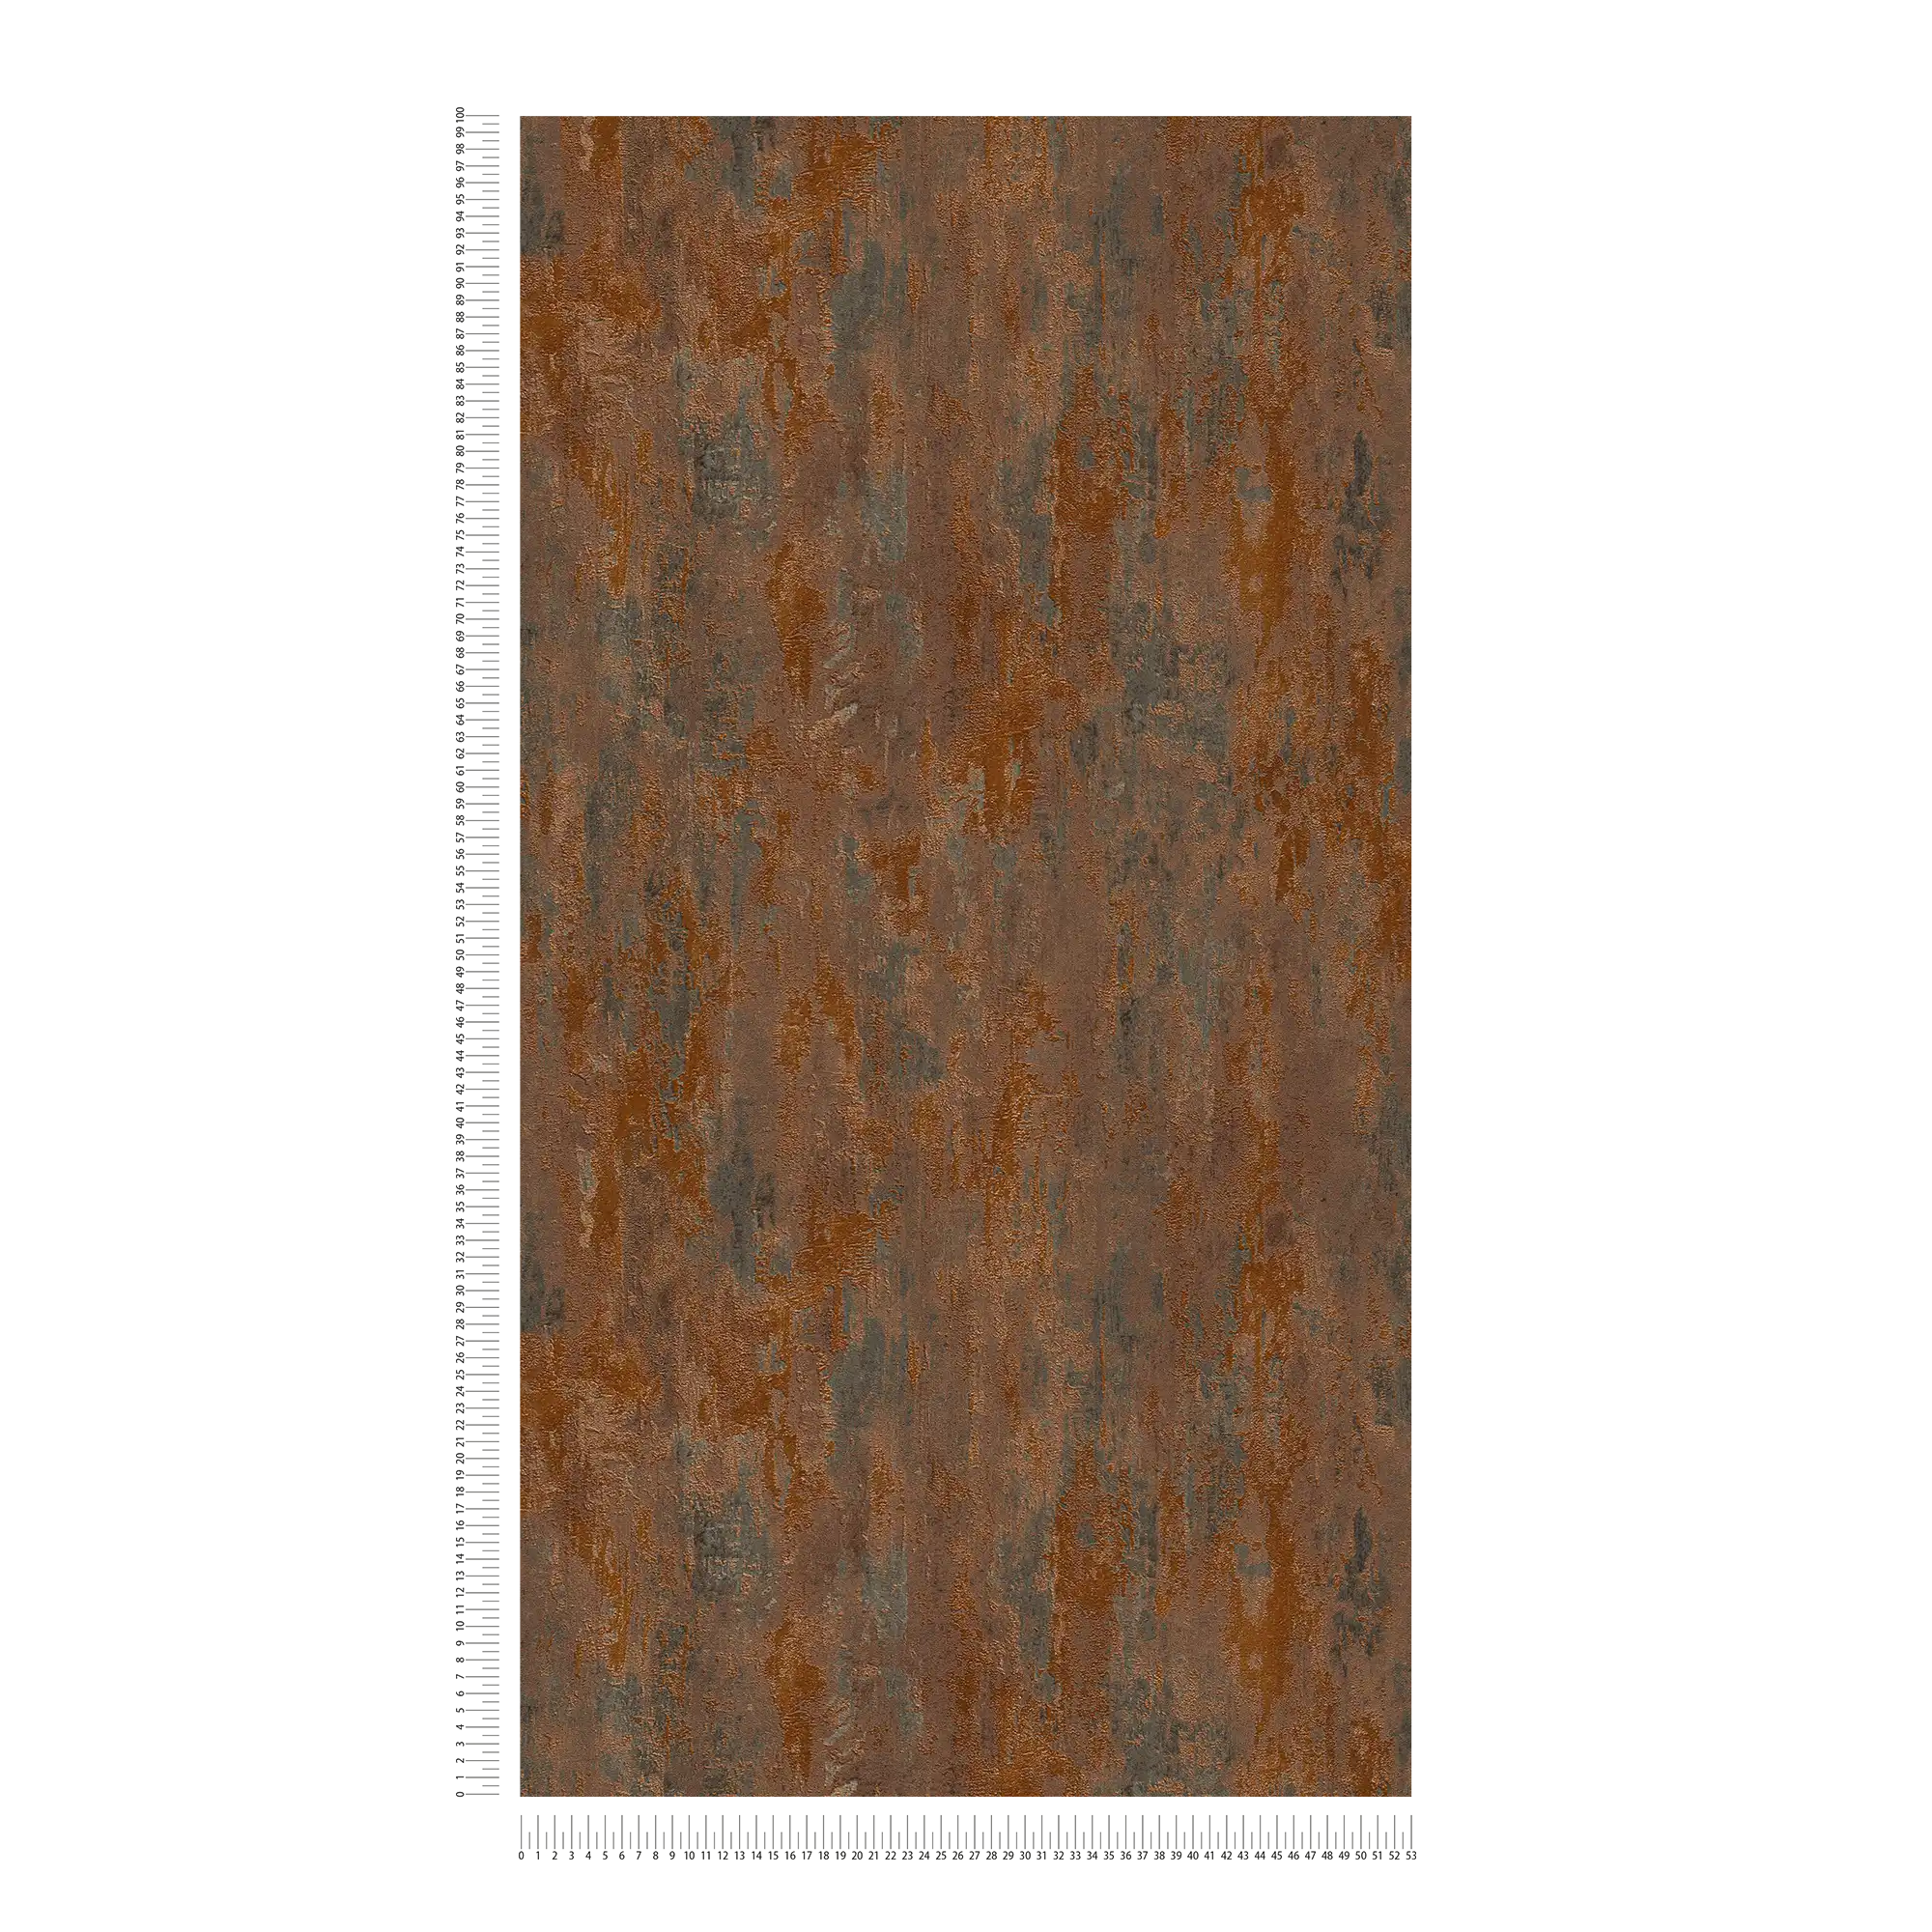             Papier peint rouille & effet métallique style industriel - orange, cuivre, marron
        